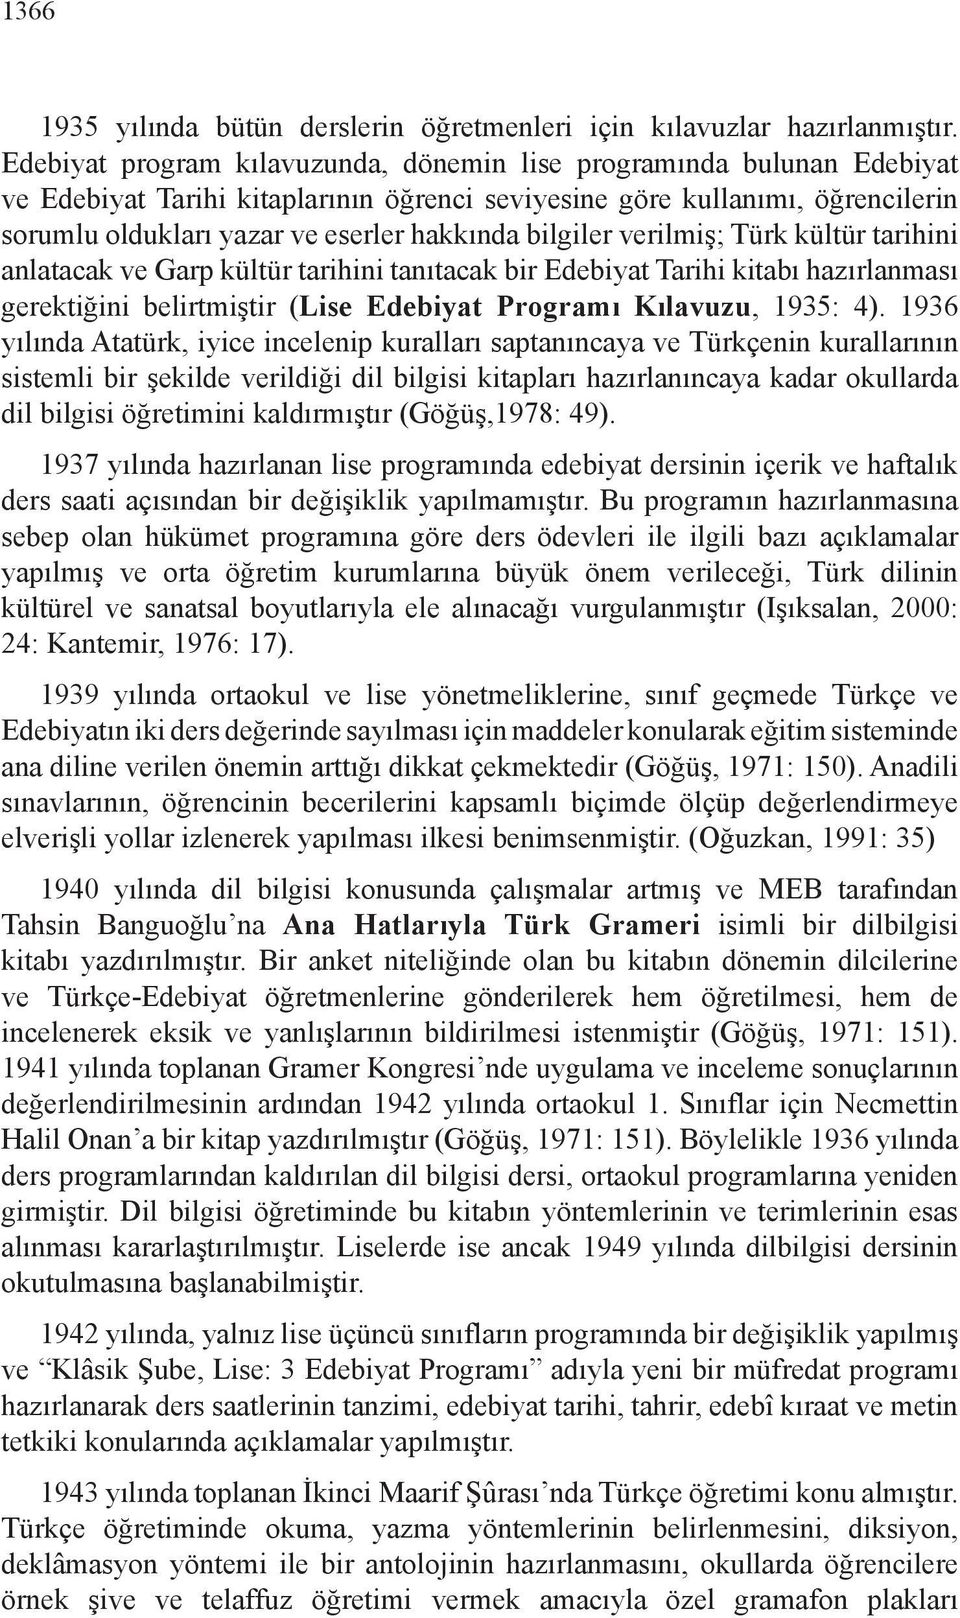 bilgiler verilmiş; Türk kültür tarihini anlatacak ve Garp kültür tarihini tanıtacak bir Edebiyat Tarihi kitabı hazırlanması gerektiğini belirtmiştir (Lise Edebiyat Programı Kılavuzu, 1935: 4).